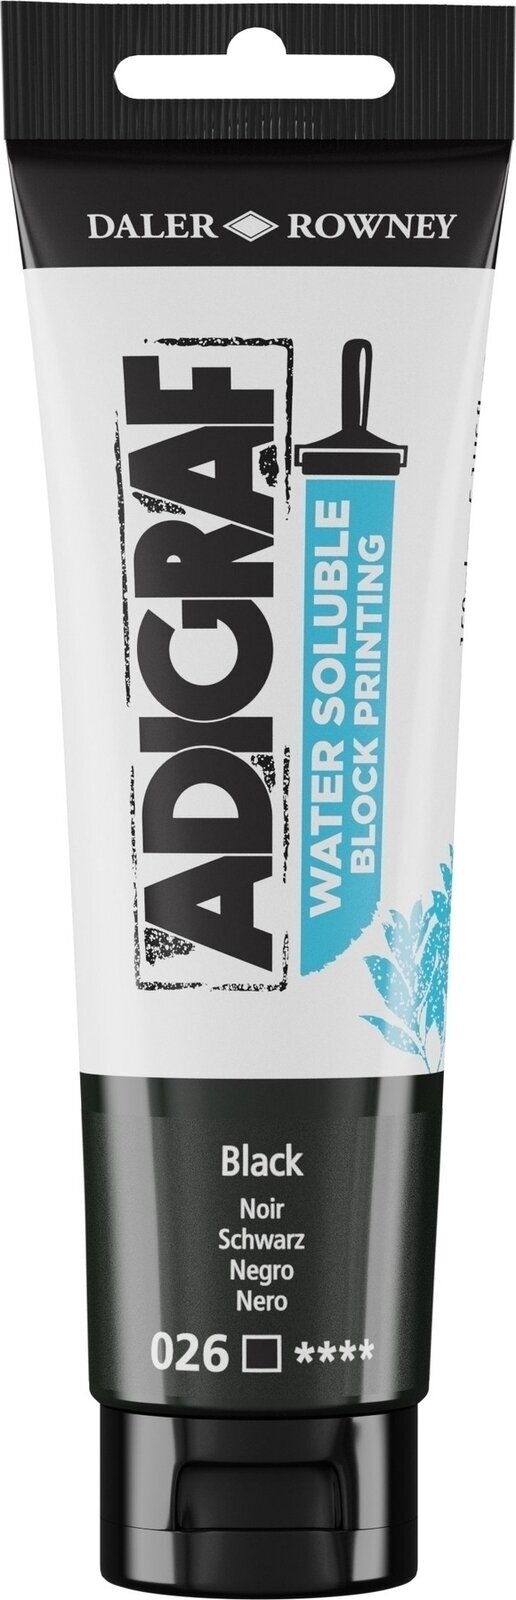 Χρώμα για λινογραφία Daler Rowney Adigraf Block Printing Water Soluble Colour Χρώμα για λινογραφία Black 150 ml